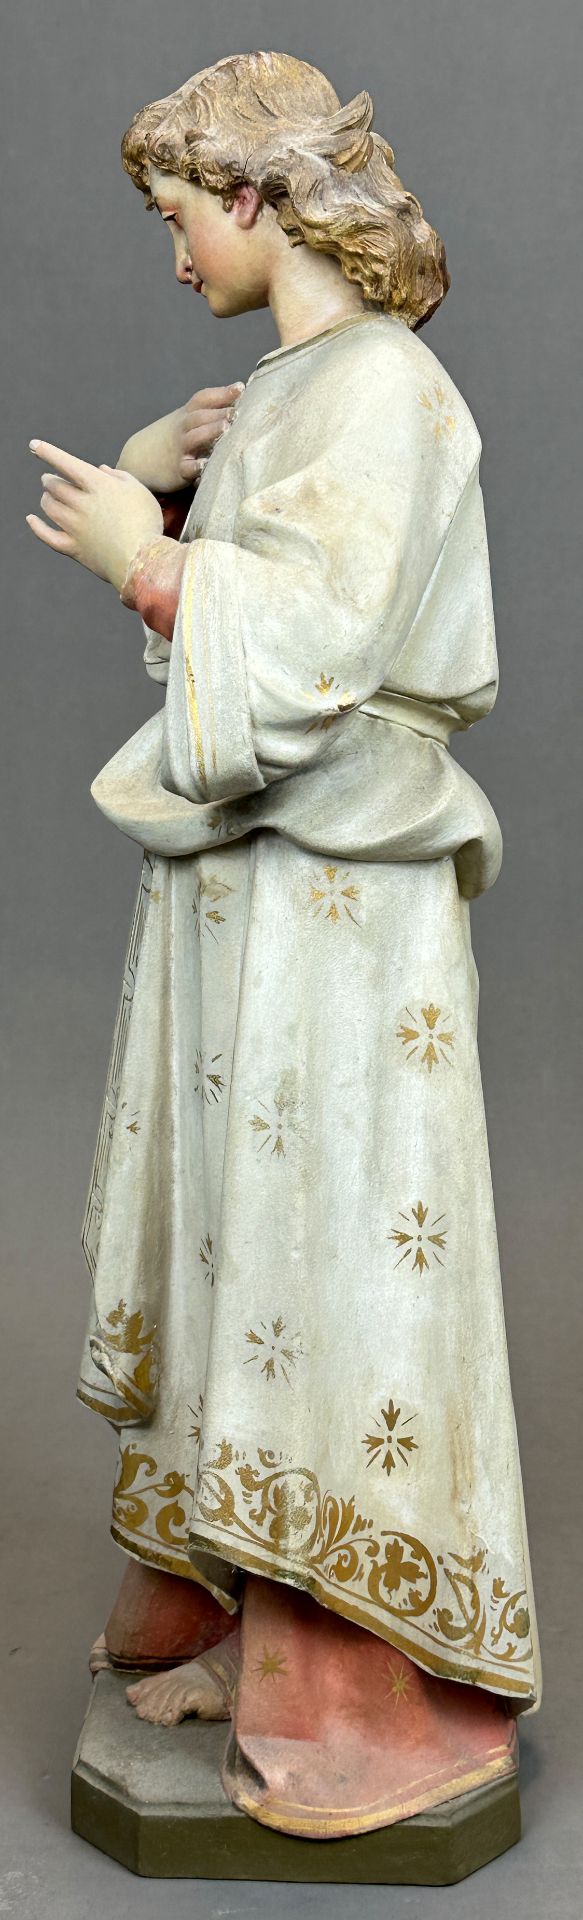 Heiligenfigur. Nazarener. 19. Jahrhundert. Deutschland. - Bild 2 aus 10